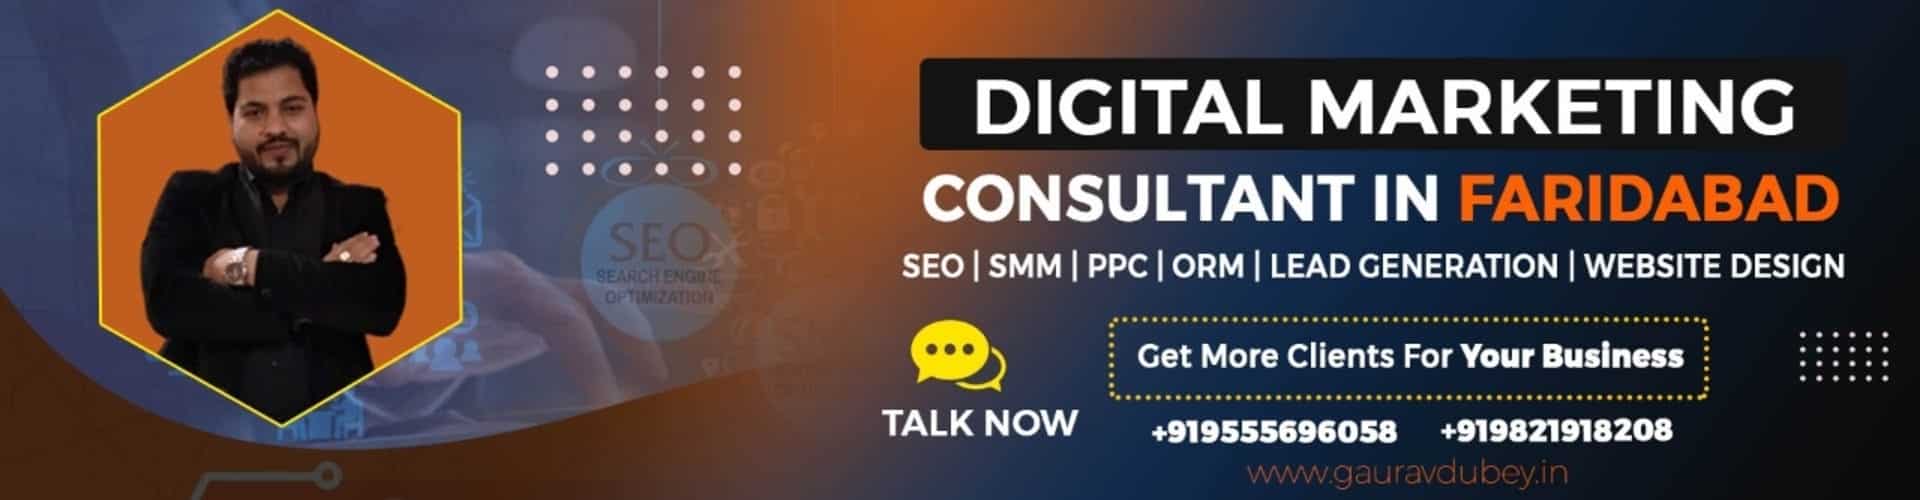 Digital Marketing Consultant in Faridabad